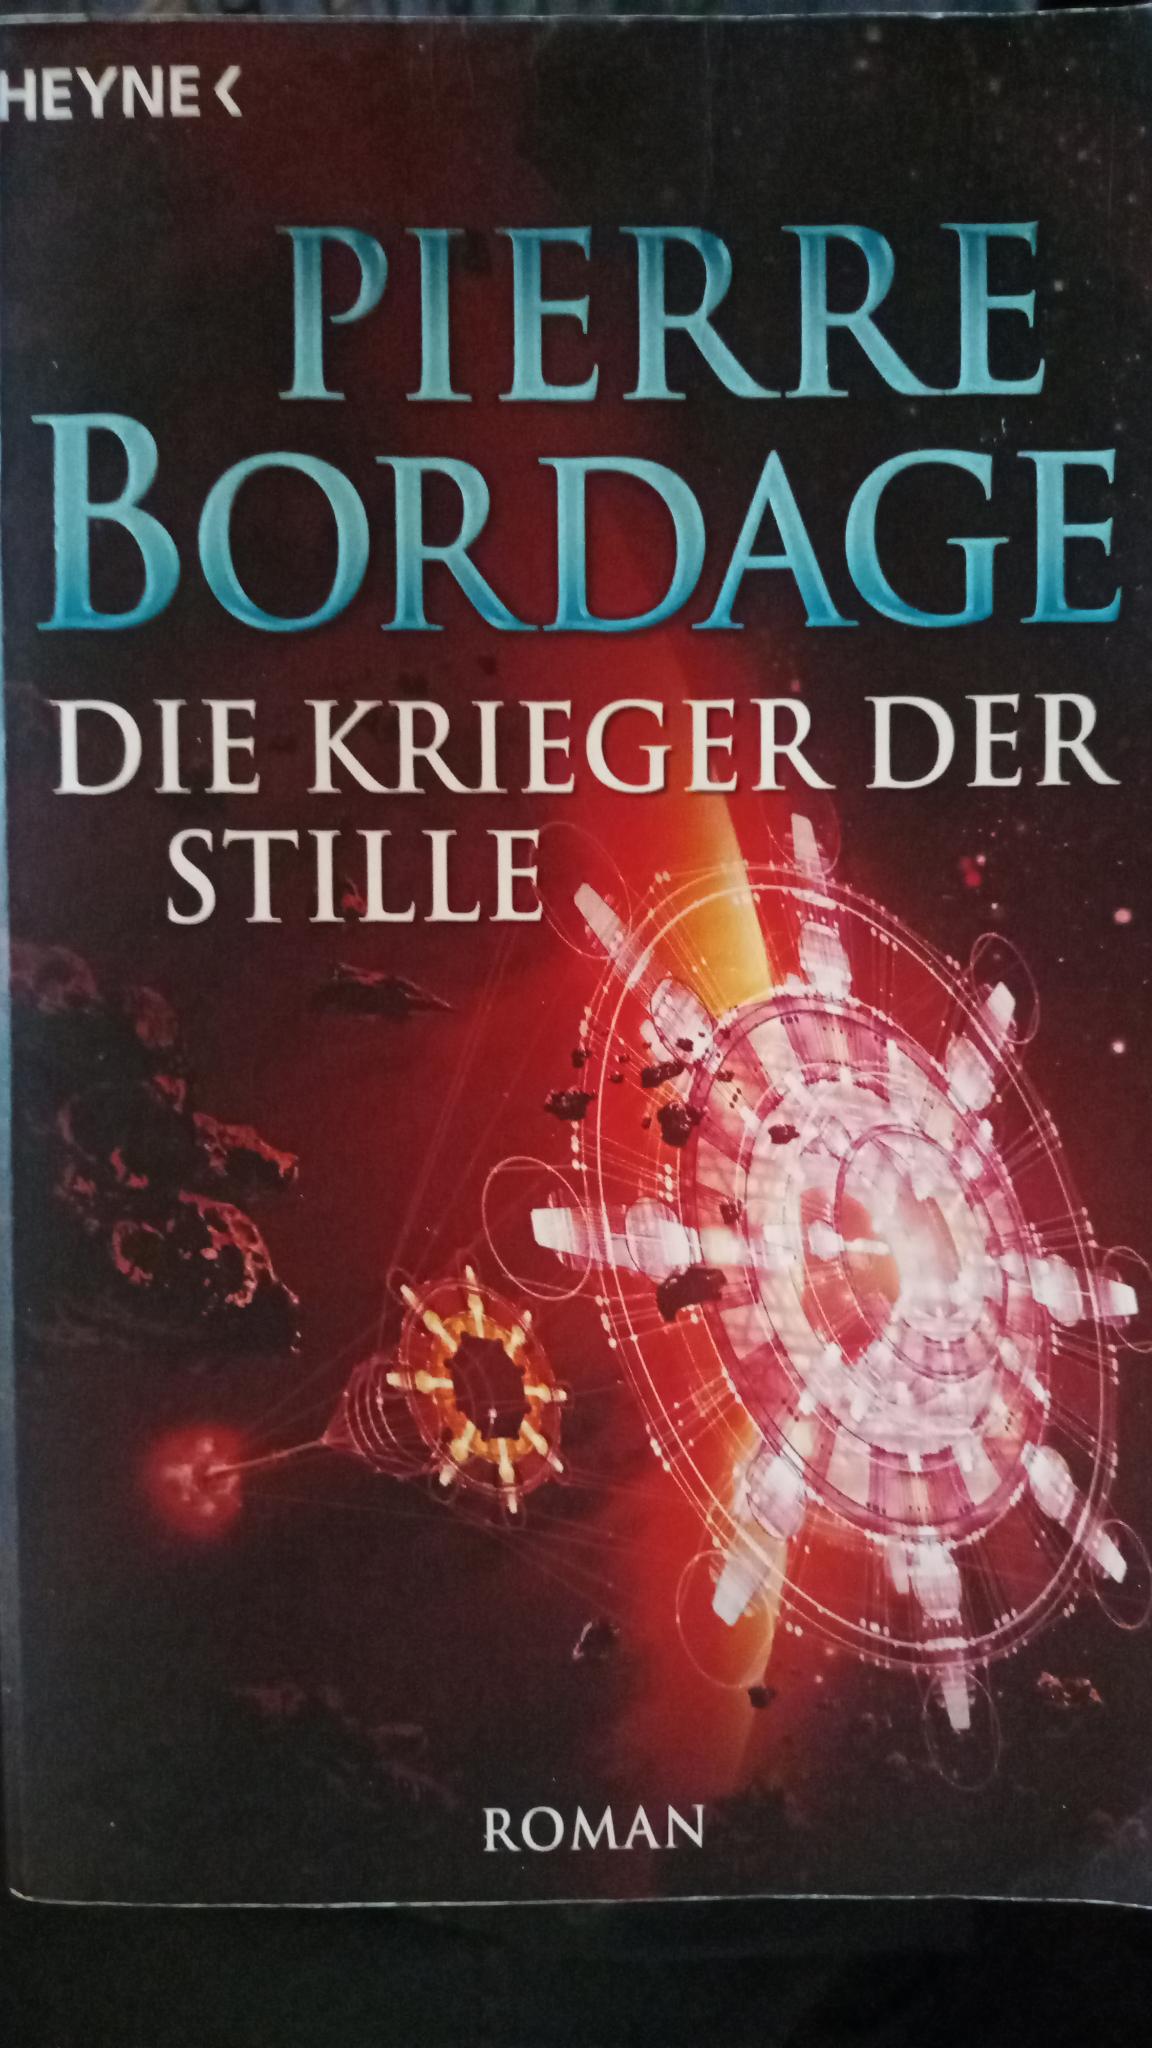 Pierre Bordage: Die Krieger der Stille (Paperback, Deutsch language, 2007, Heyne)